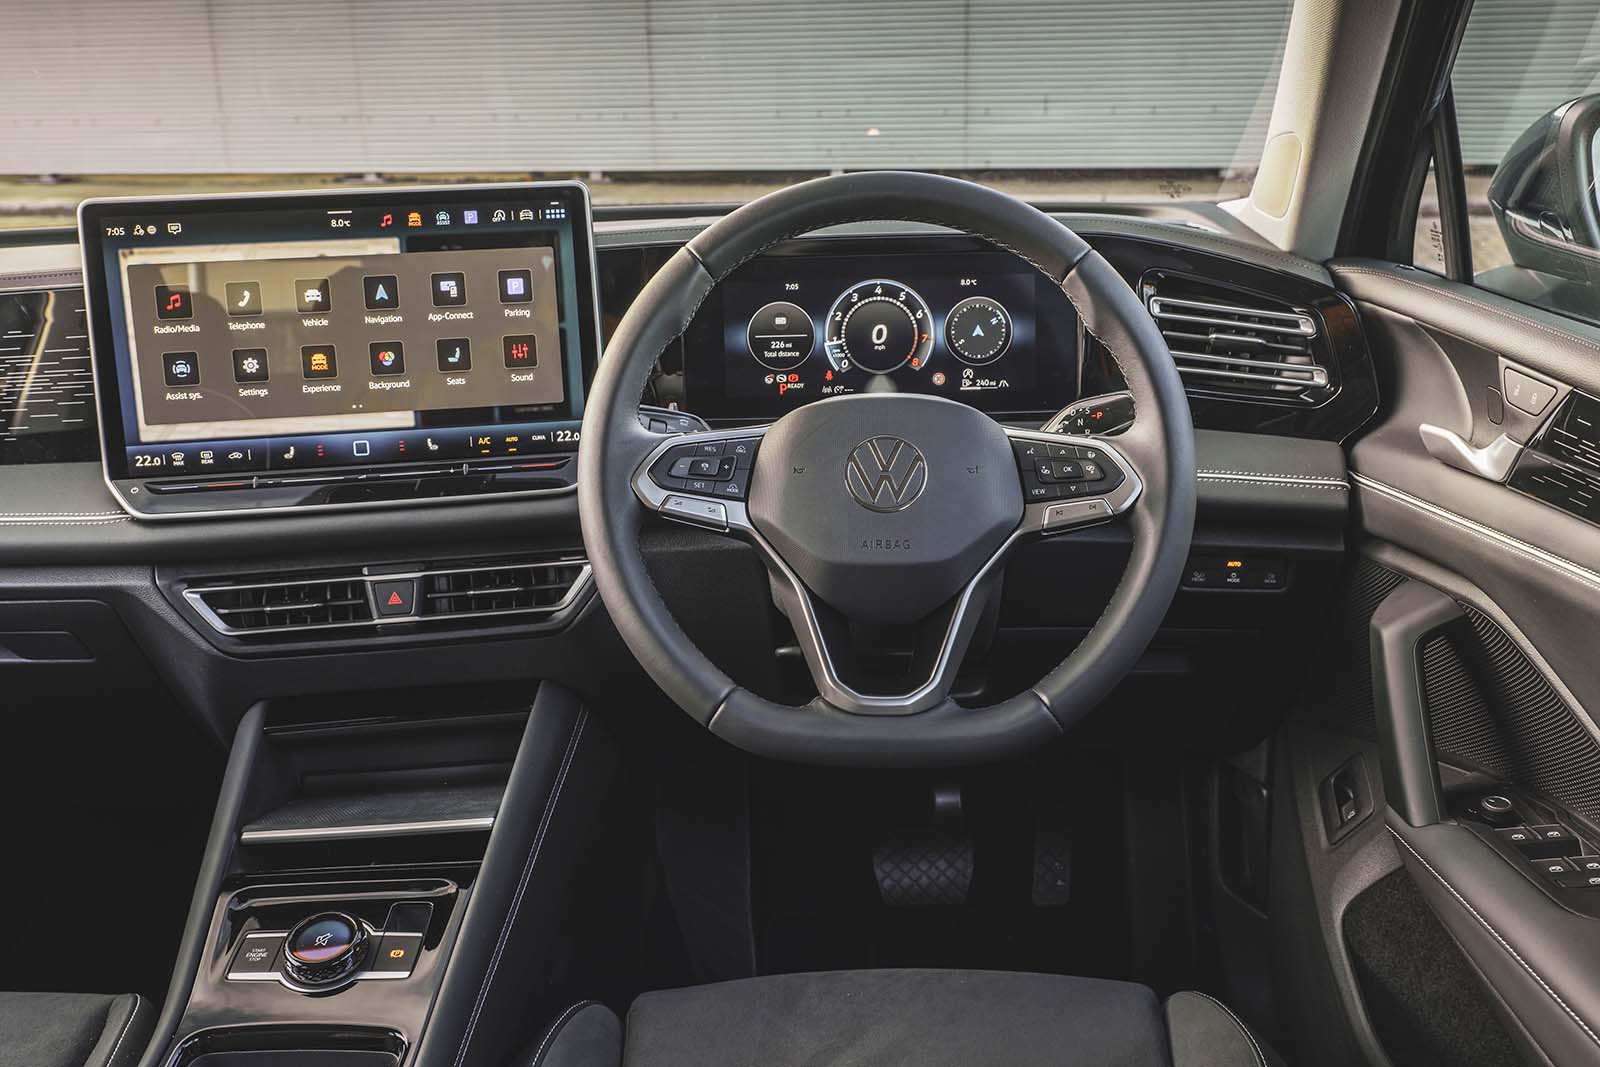 Volkswagen Tiguan review interior